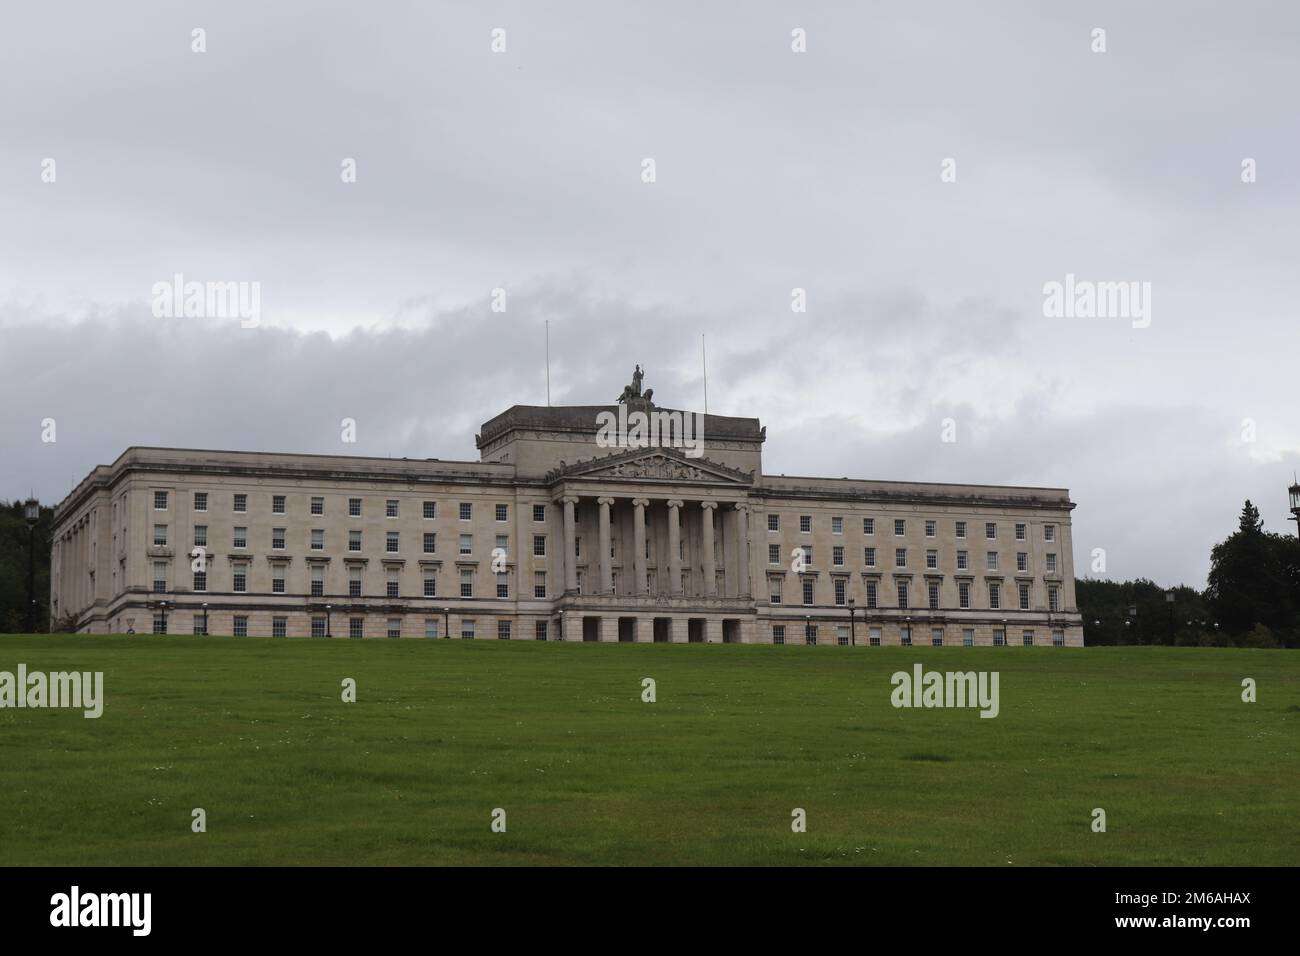 Edifici del Parlamento di Stormont - Irlanda del Nord. 20th agosto ore 2019 2:51. Stormont giacente dormiente senza nessun esecutivo presente in NI al momento. Foto Stock